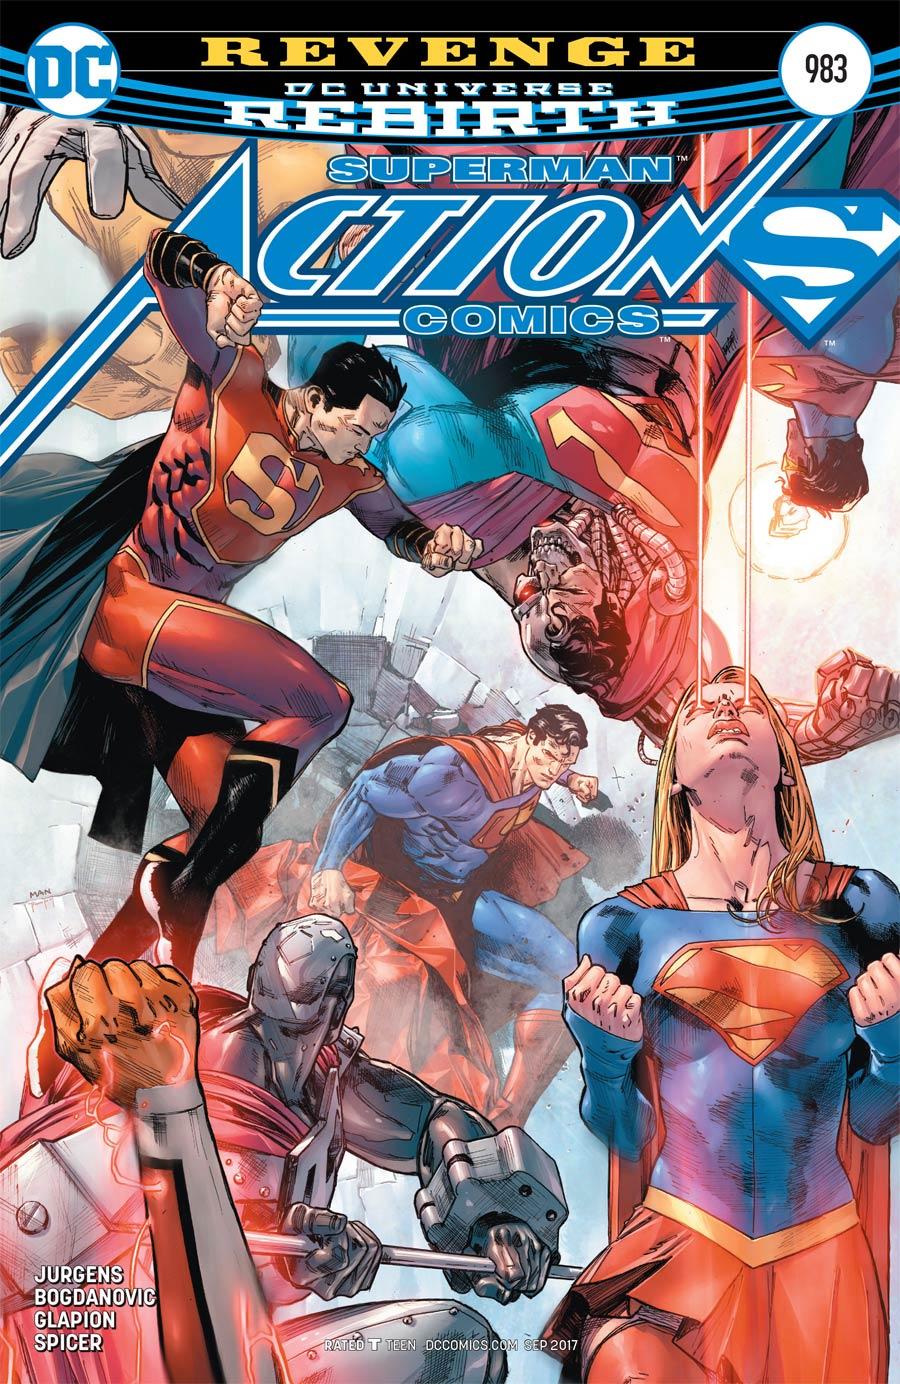 Action Comics Vol. 2 #983